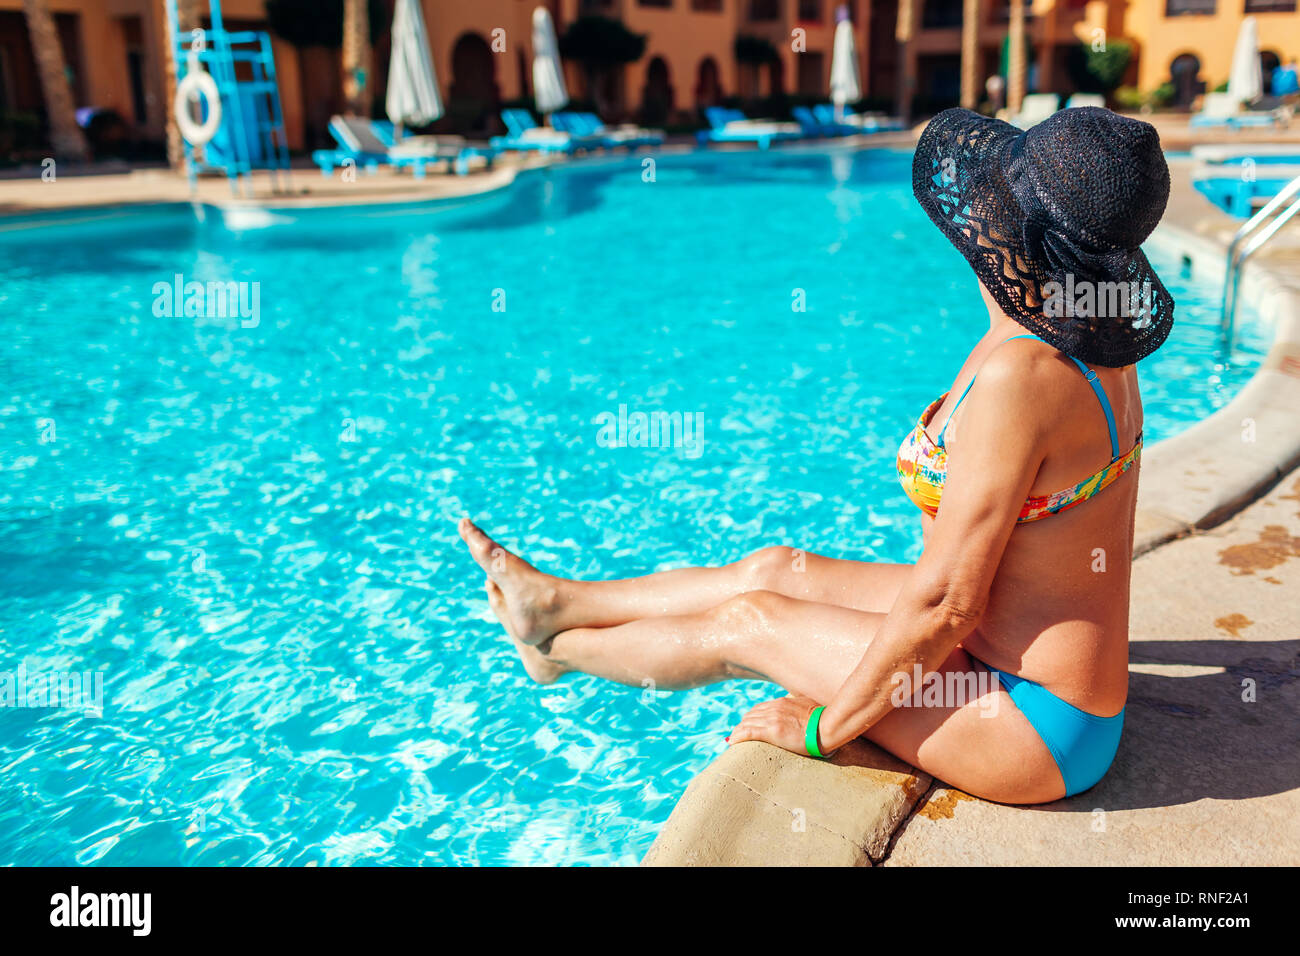 Senior donna in bikini a rilassarci in piscina. Le persone che si godono le vacanze estive. La formula all inclusive Foto Stock